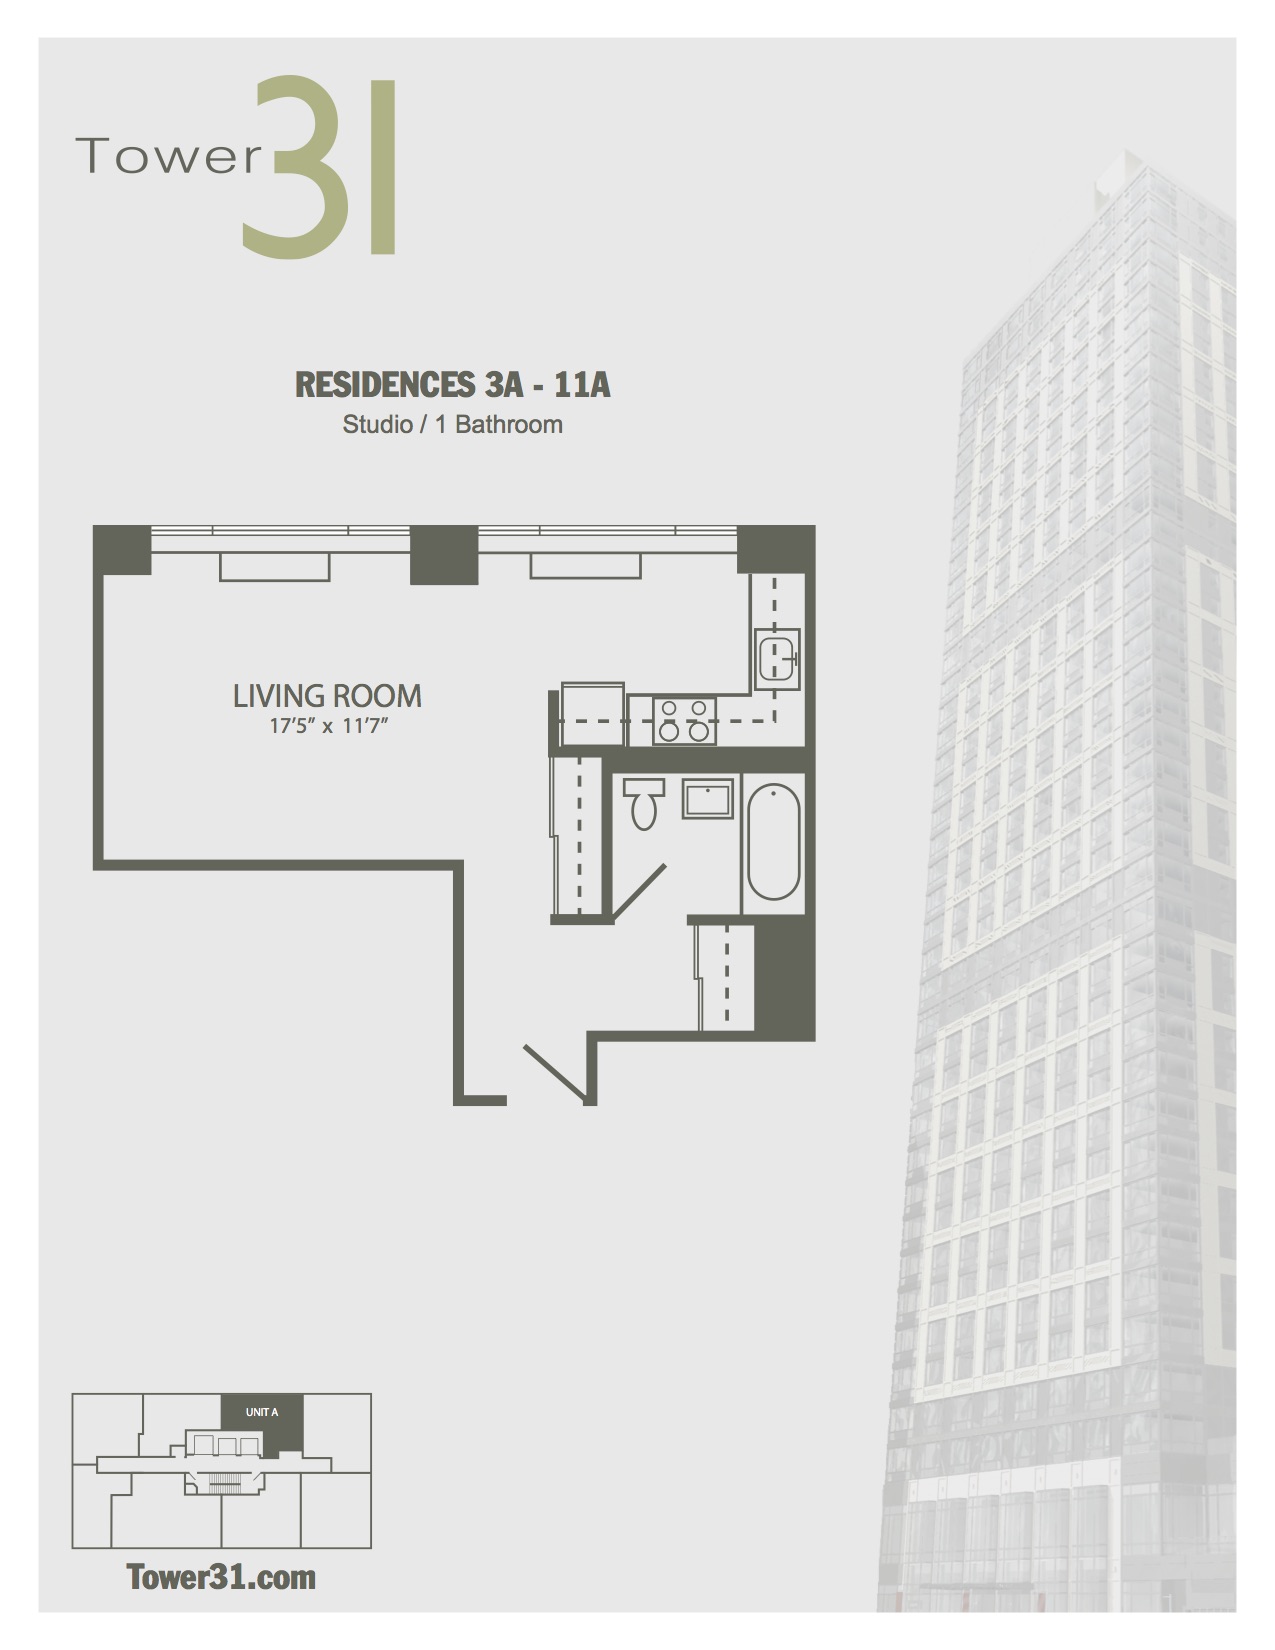 Residence A Floors 3-11